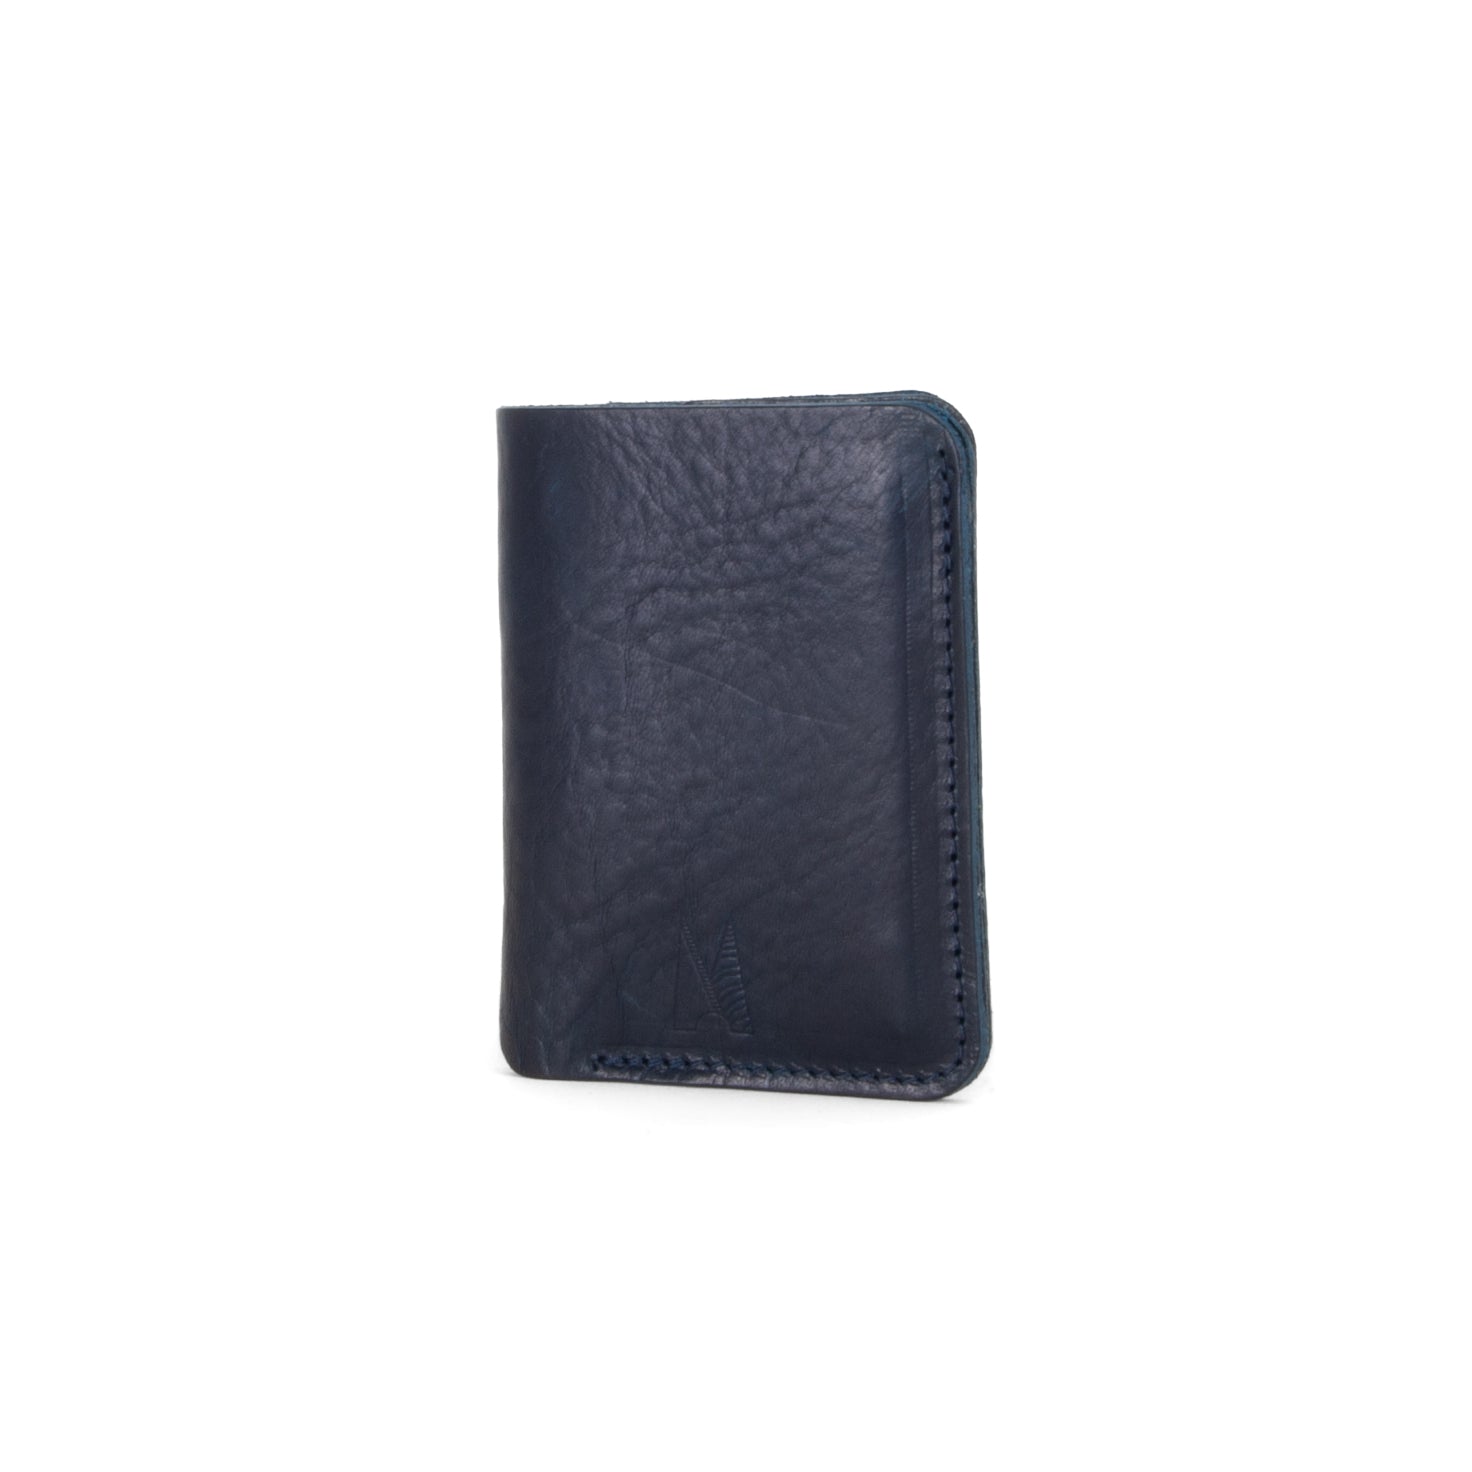 Missouri Navy Leather Wallet